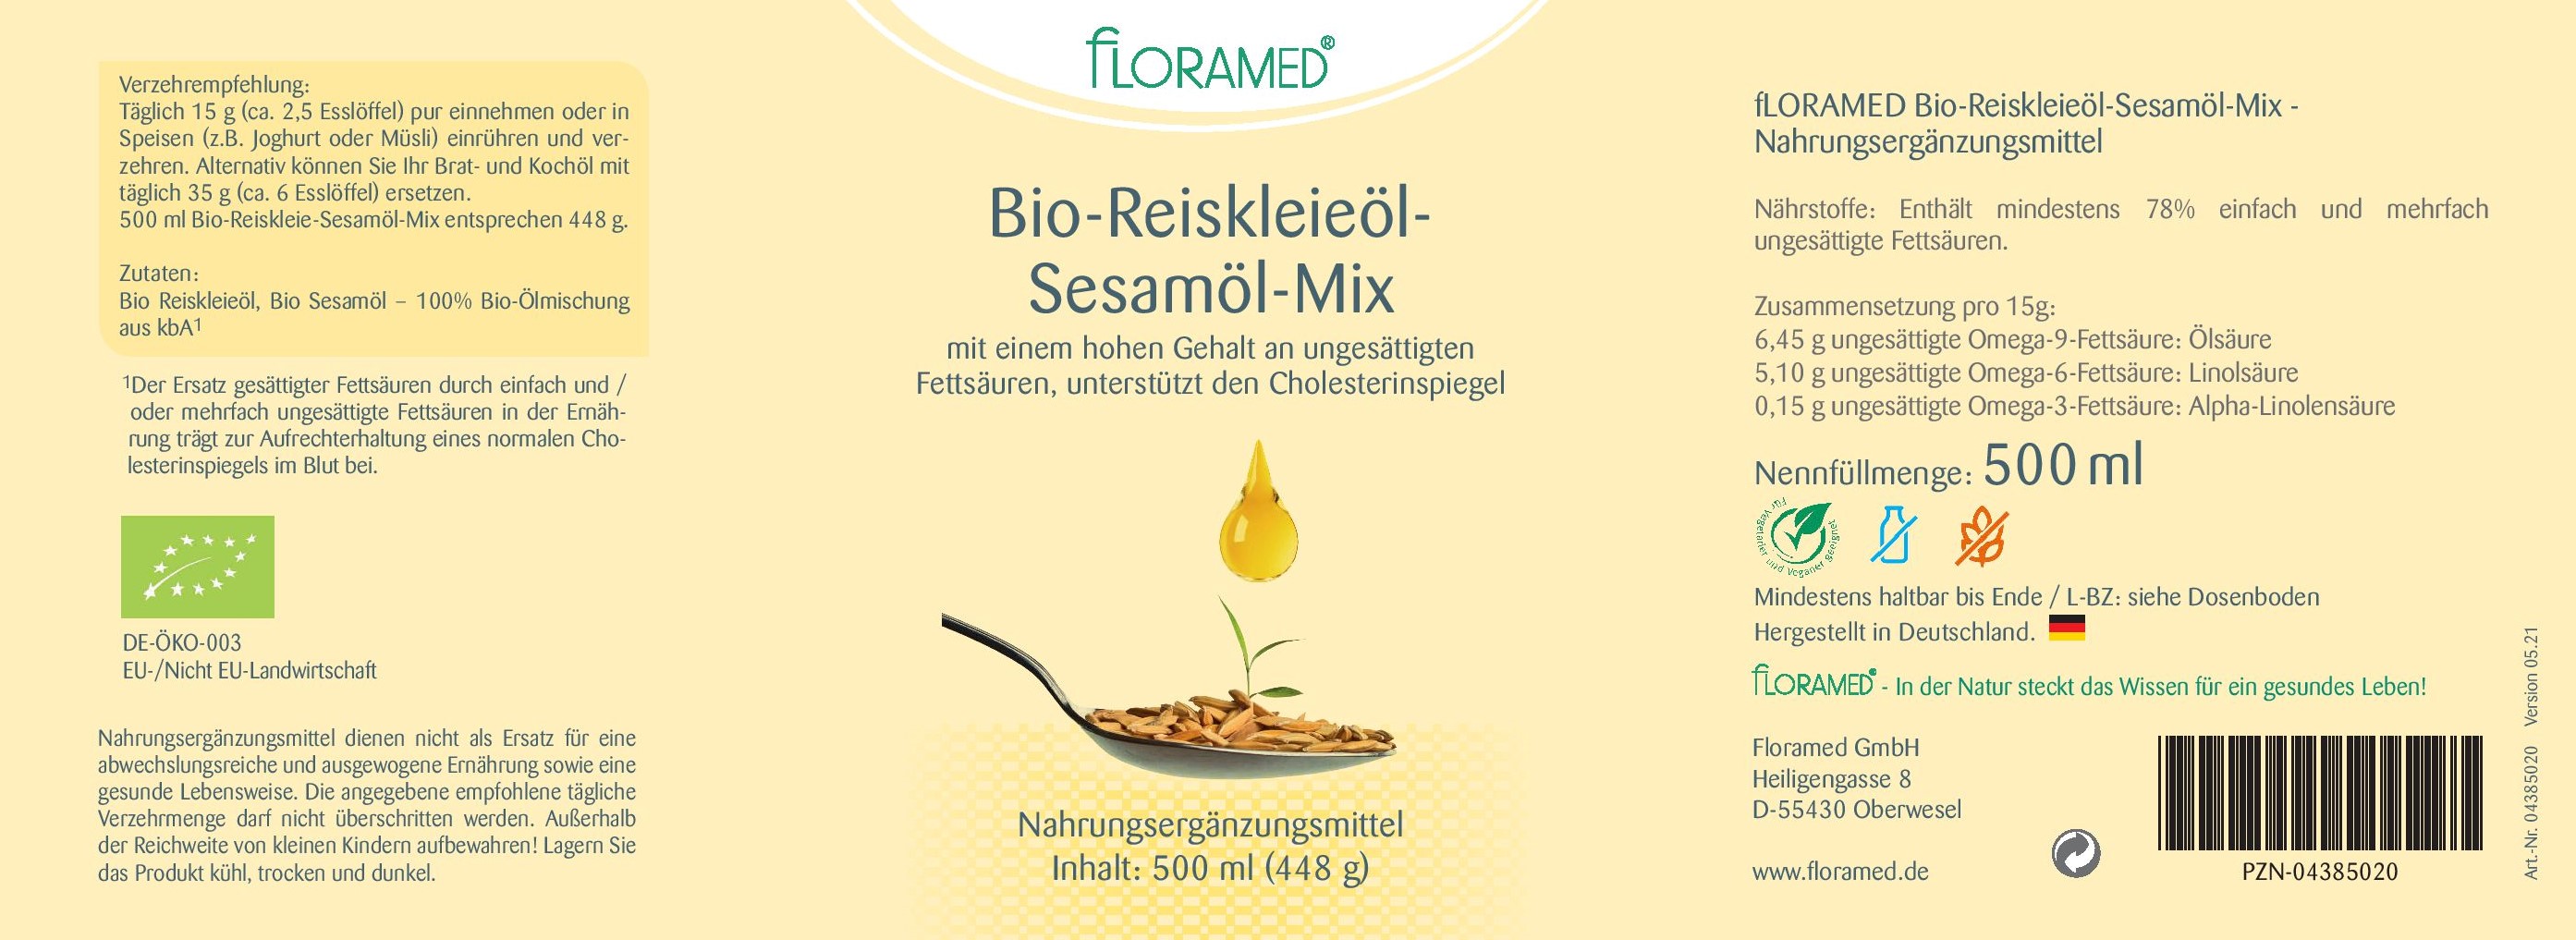 Floramed Bio-Reiskleieöl-Sesamöl-Mix DE-ÖKO-003